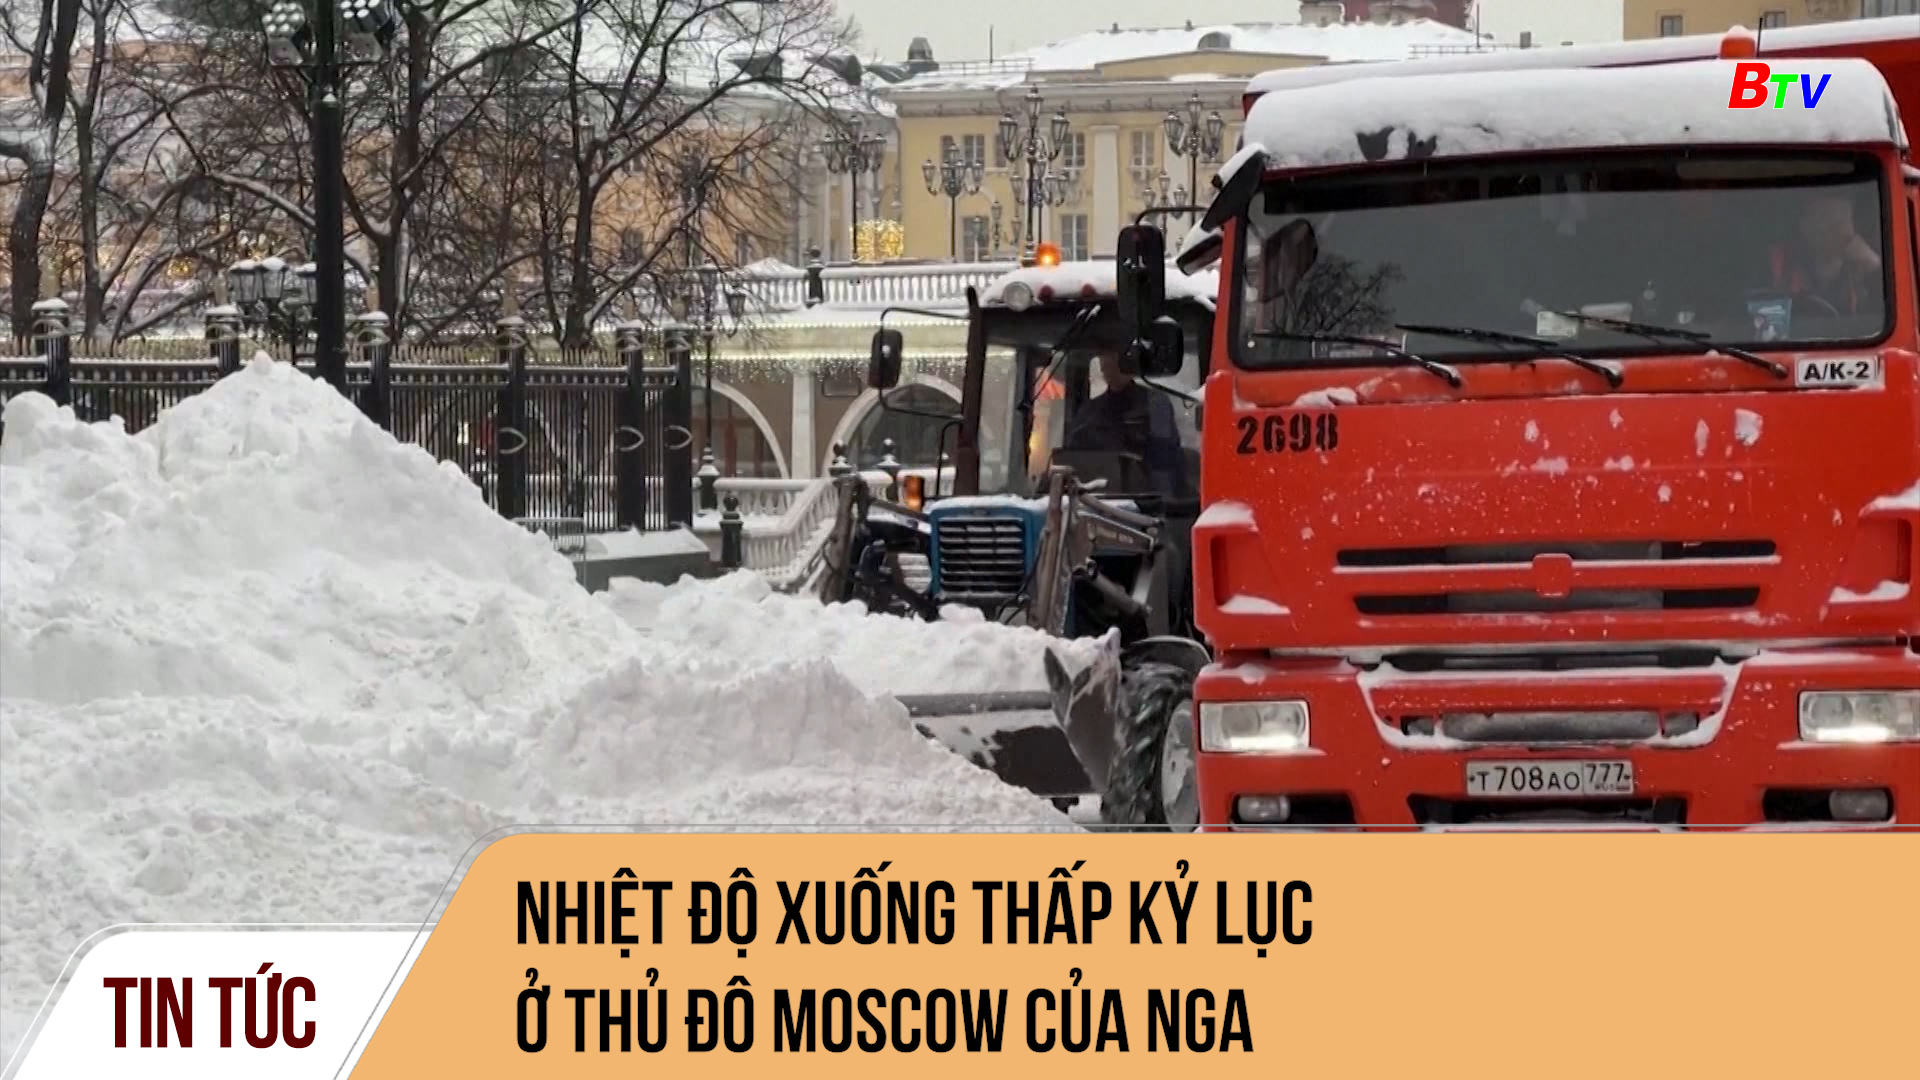 Nhiệt độ xuống thấp kỷ lục ở thủ đô Moscow của Nga